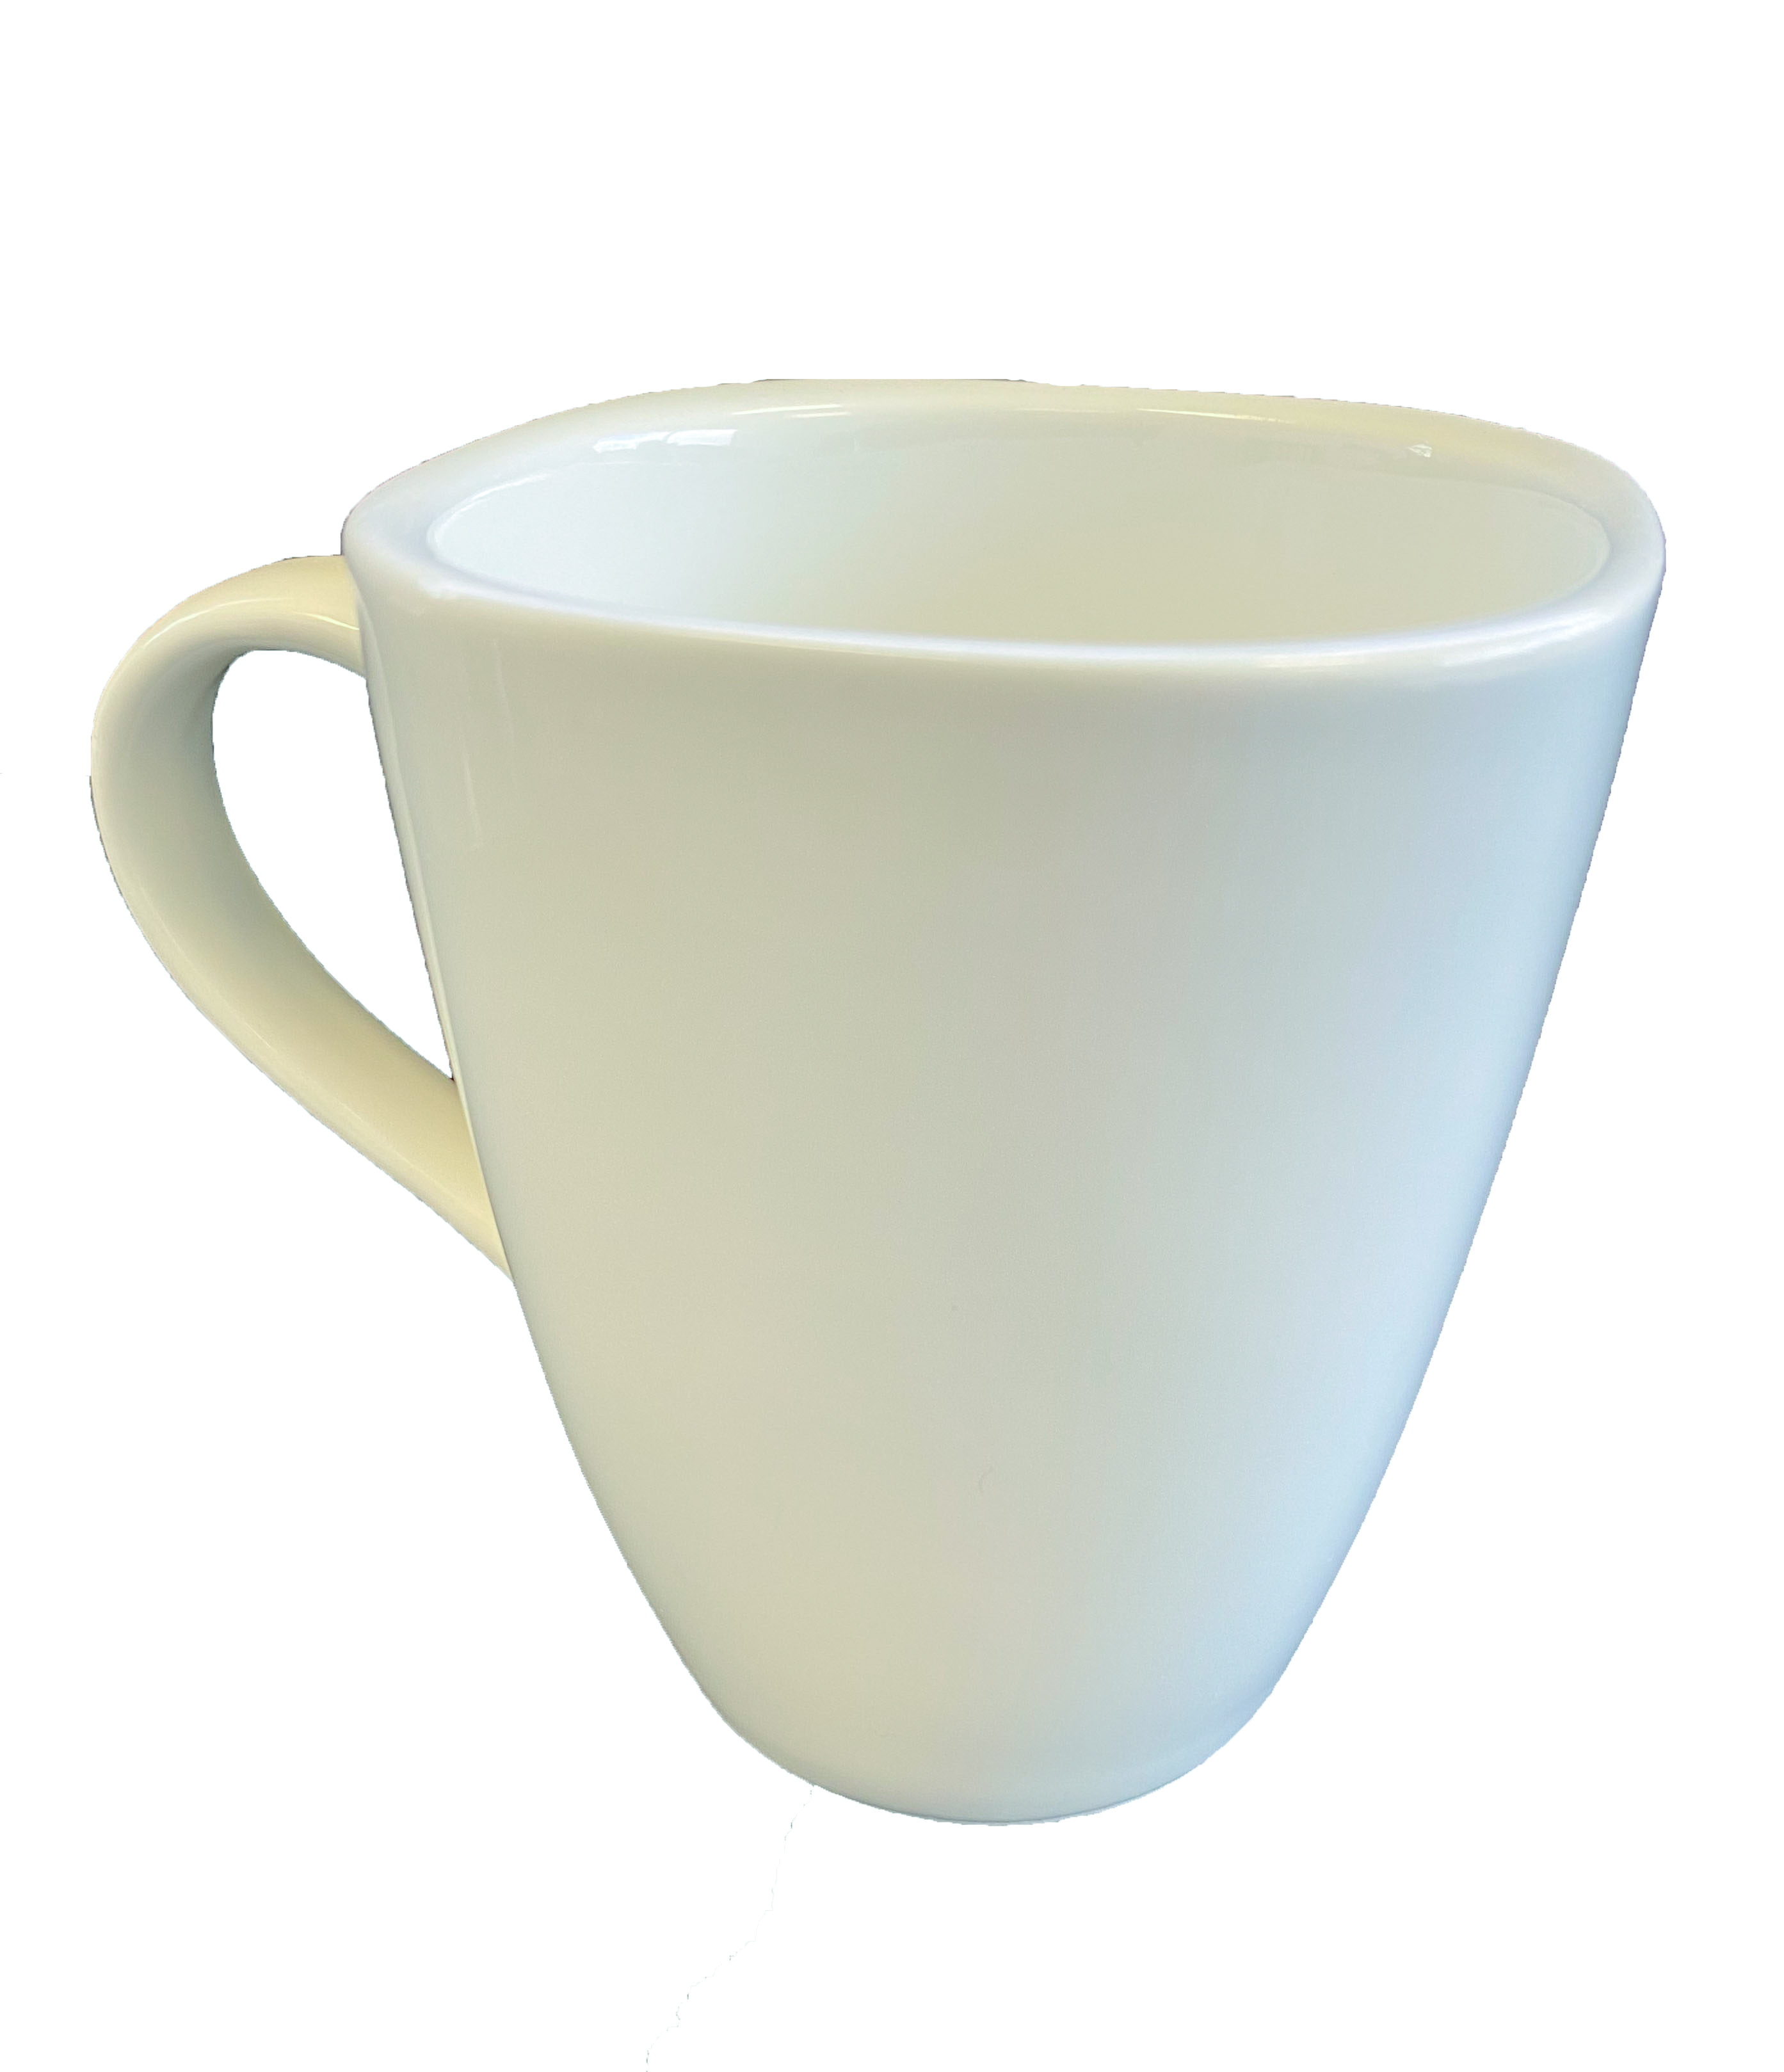 category_M1123 - White China Mug Large